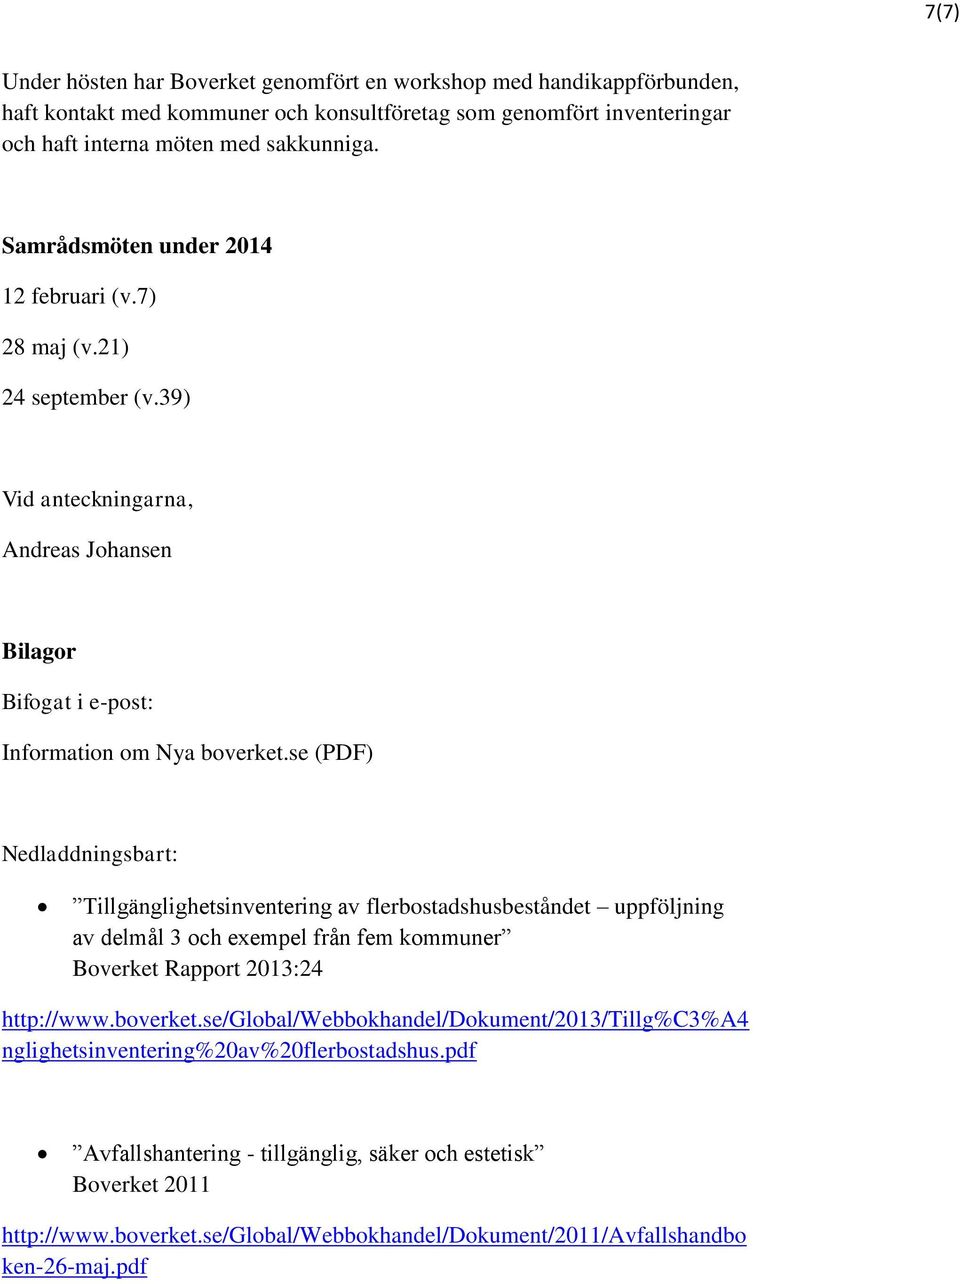 se (PDF) Nedladdningsbart: Tillgänglighetsinventering av flerbostadshusbeståndet uppföljning av delmål 3 och exempel från fem kommuner Boverket Rapport 2013:24 http://www.boverket.